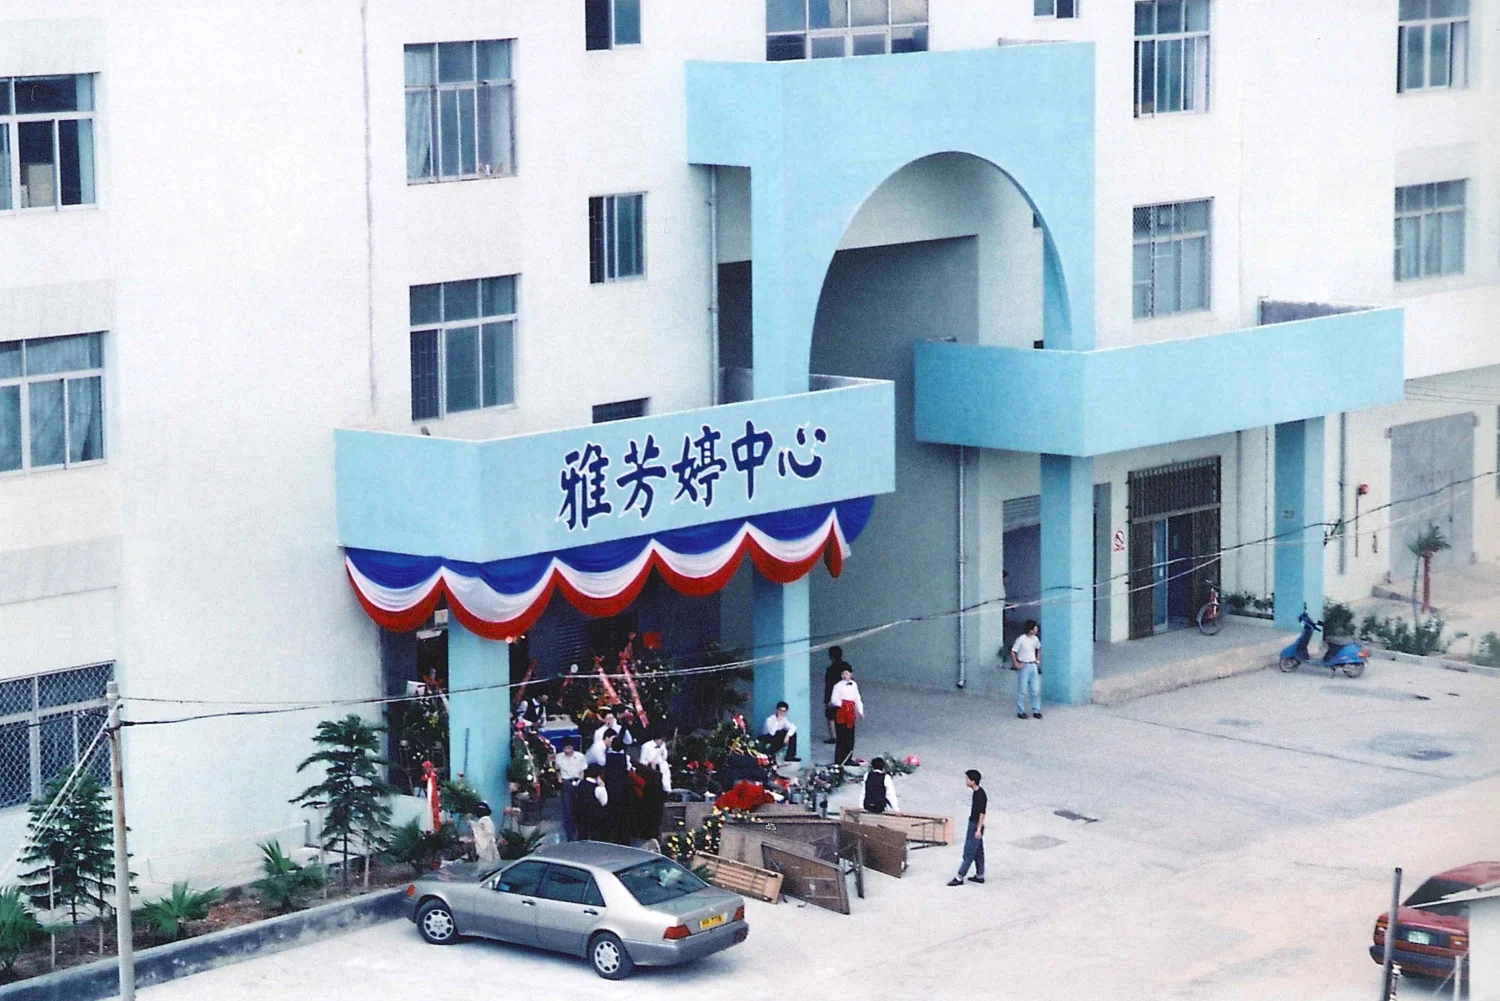 1994 年雅芳婷中心於深圳南山區落成